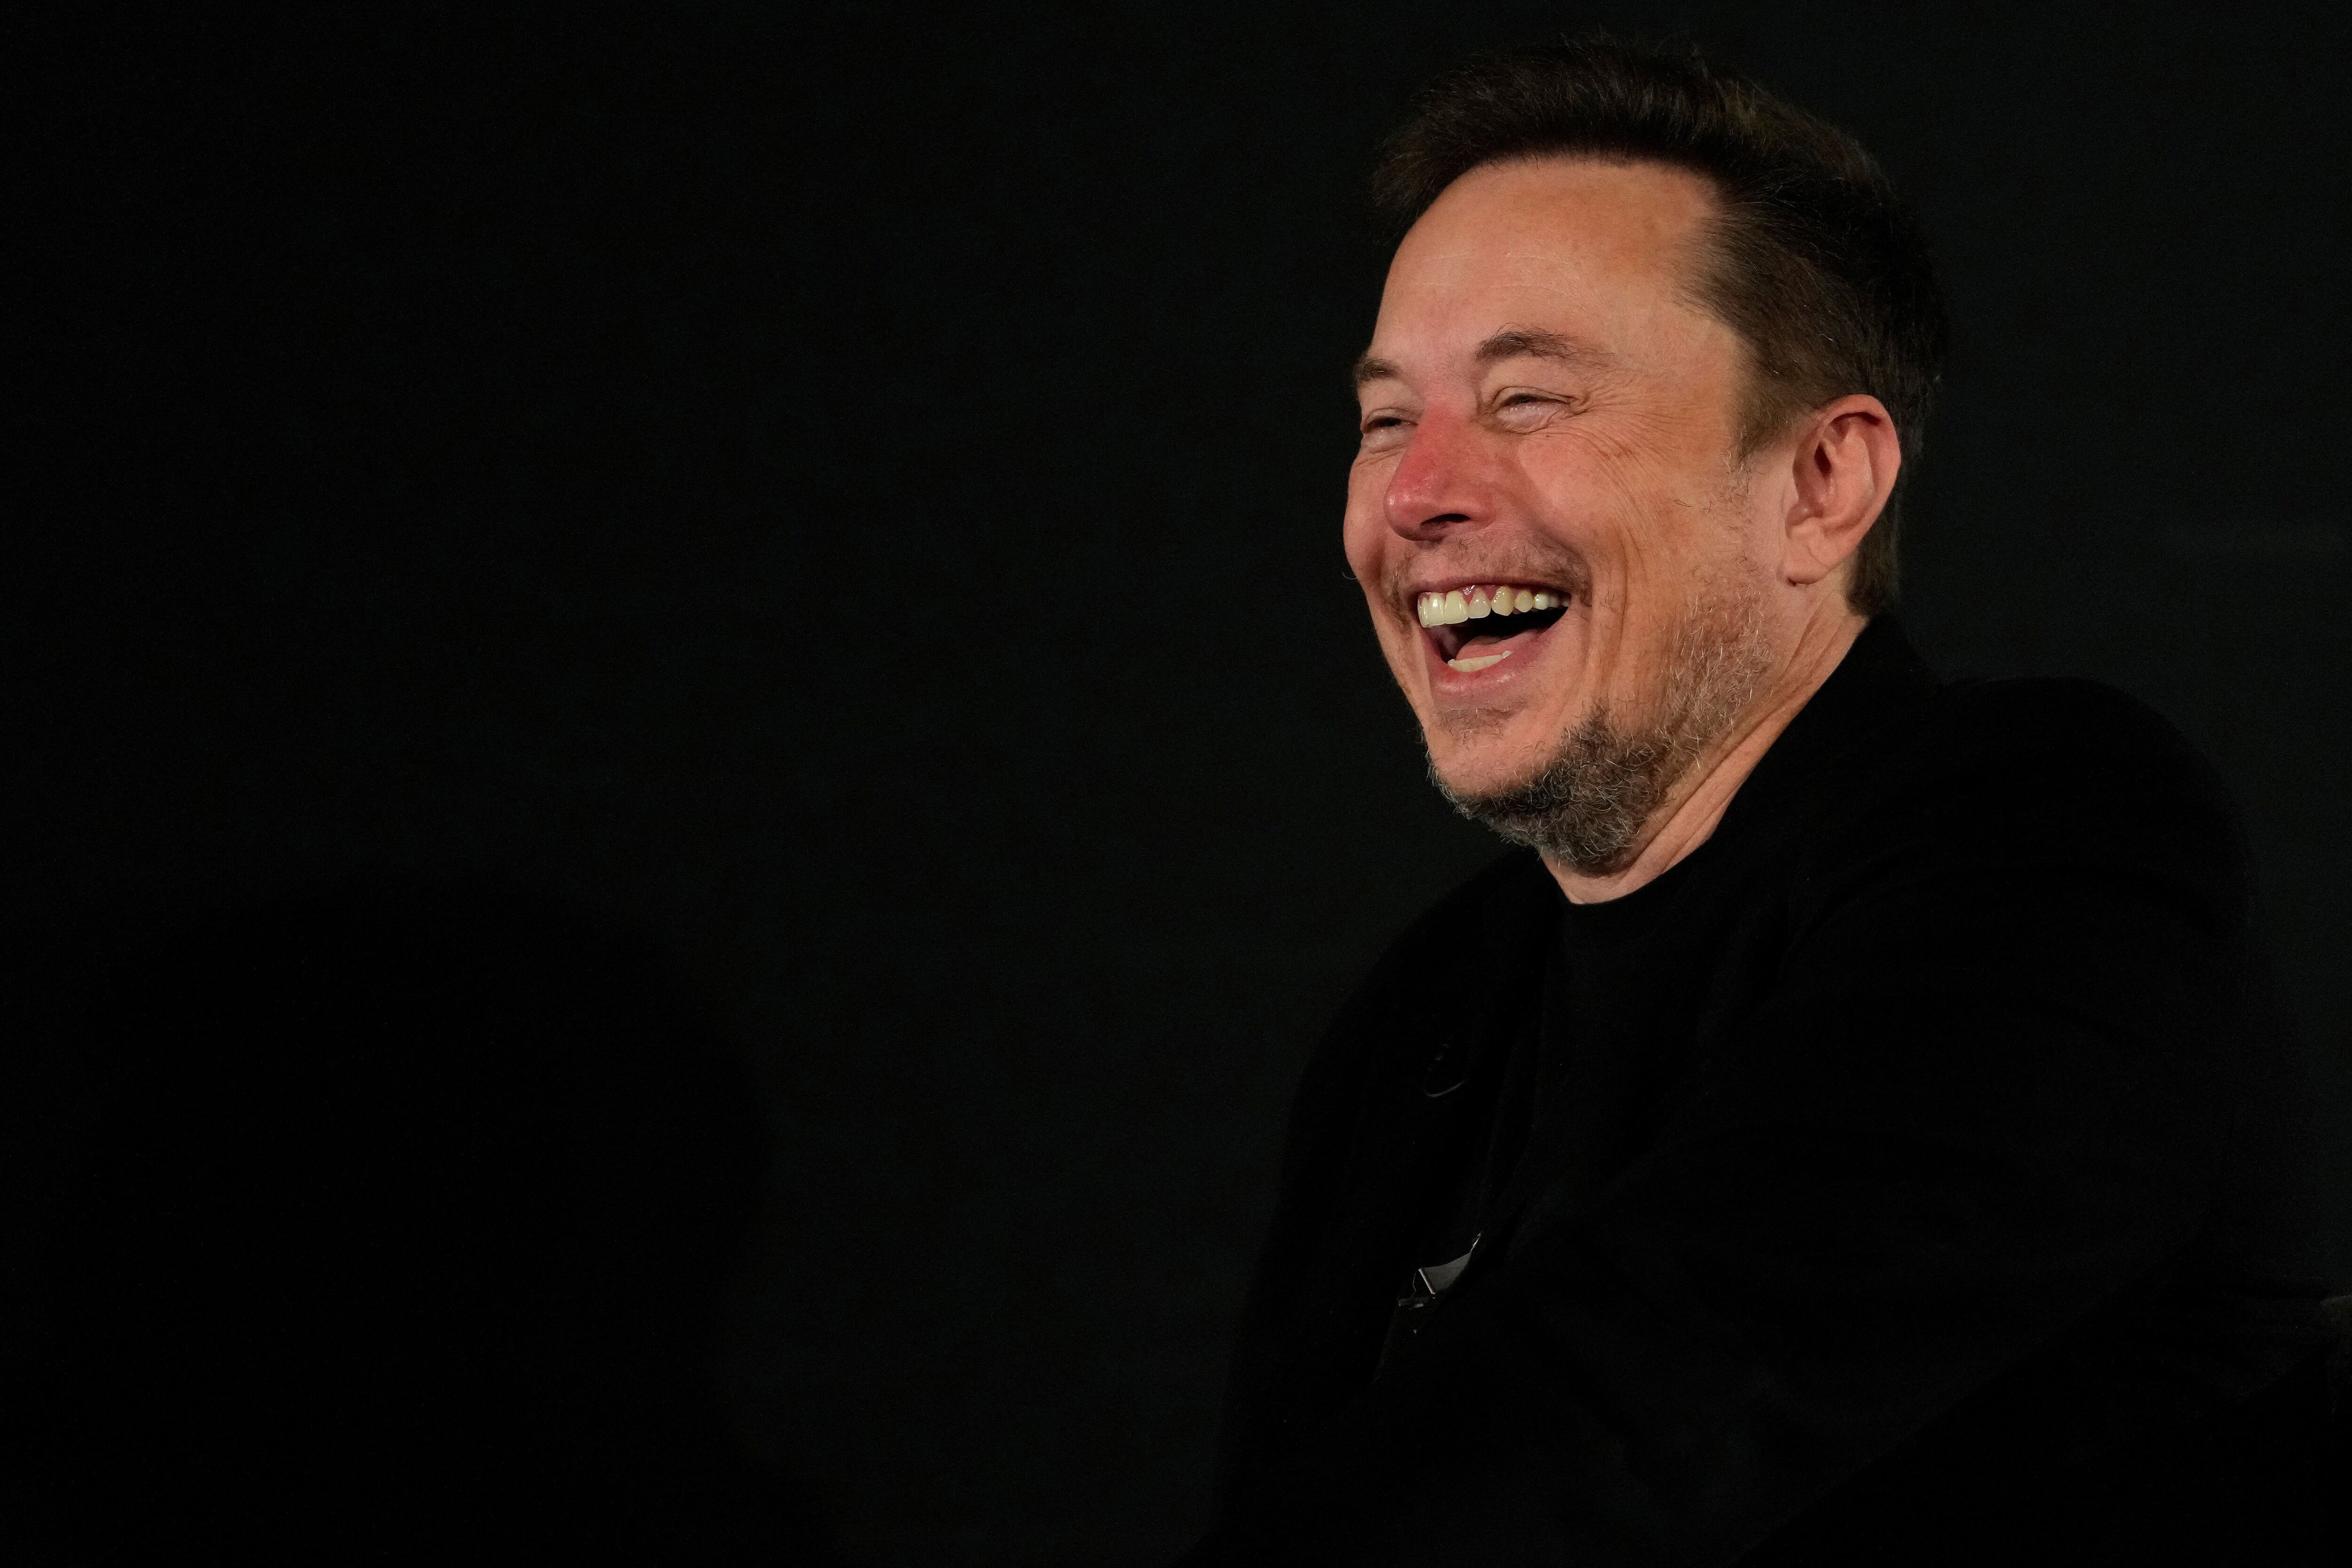 Elon Musk tiene una relación cercana con sus primos, desde los afectos y lo profesional (Kirsty Wigglesworth/Pool via REUTERS)